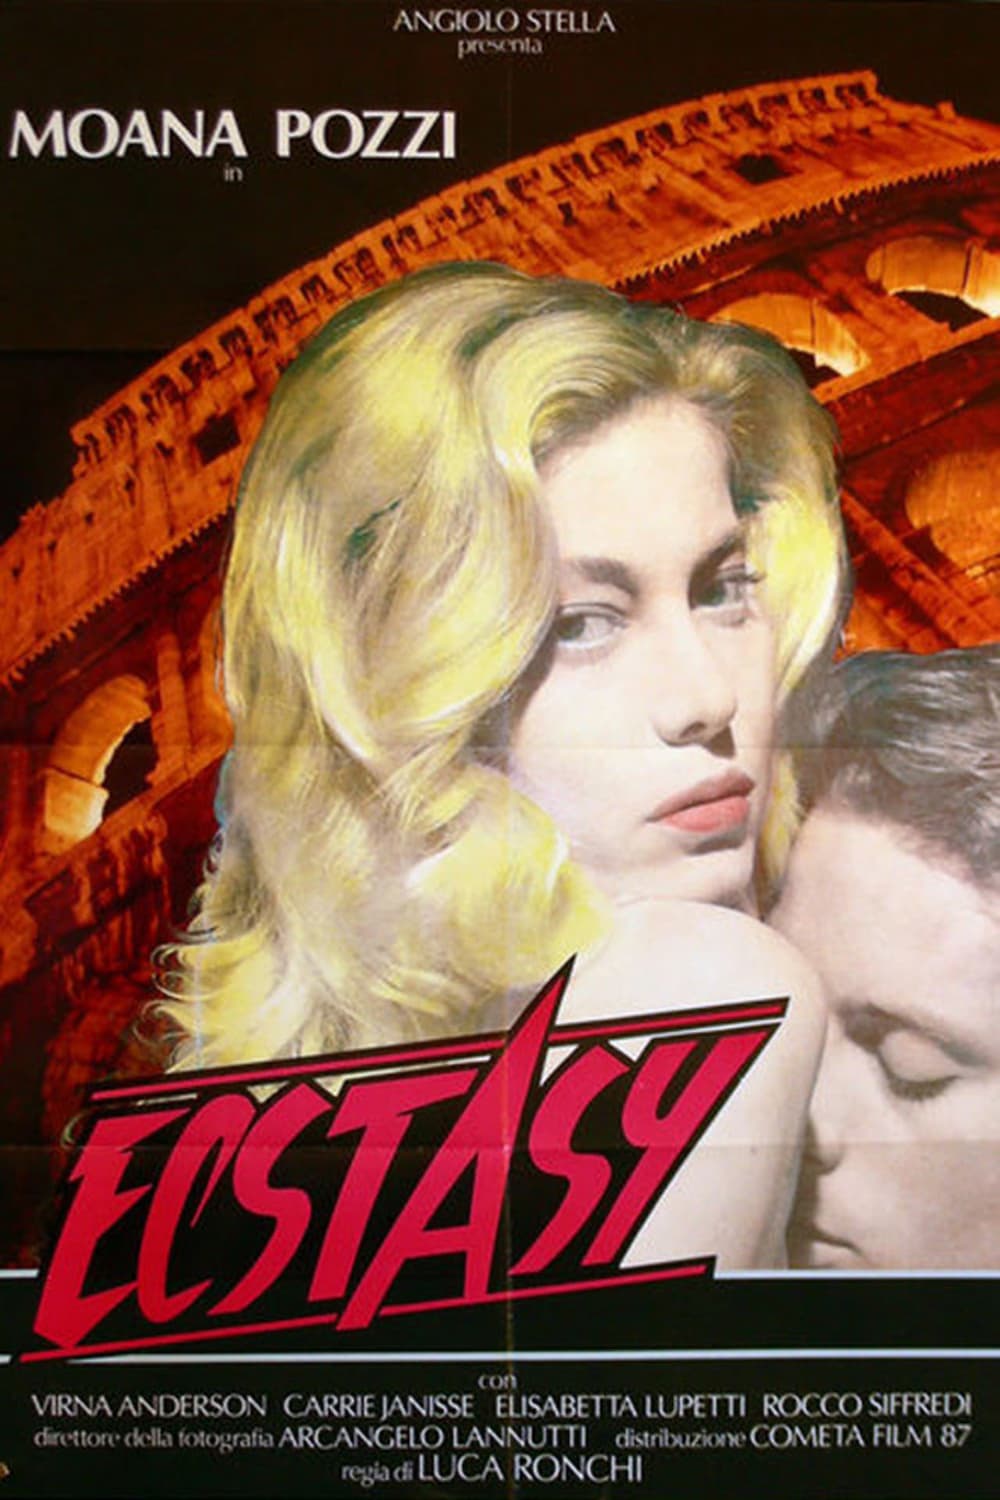 ECSTASY (1989)